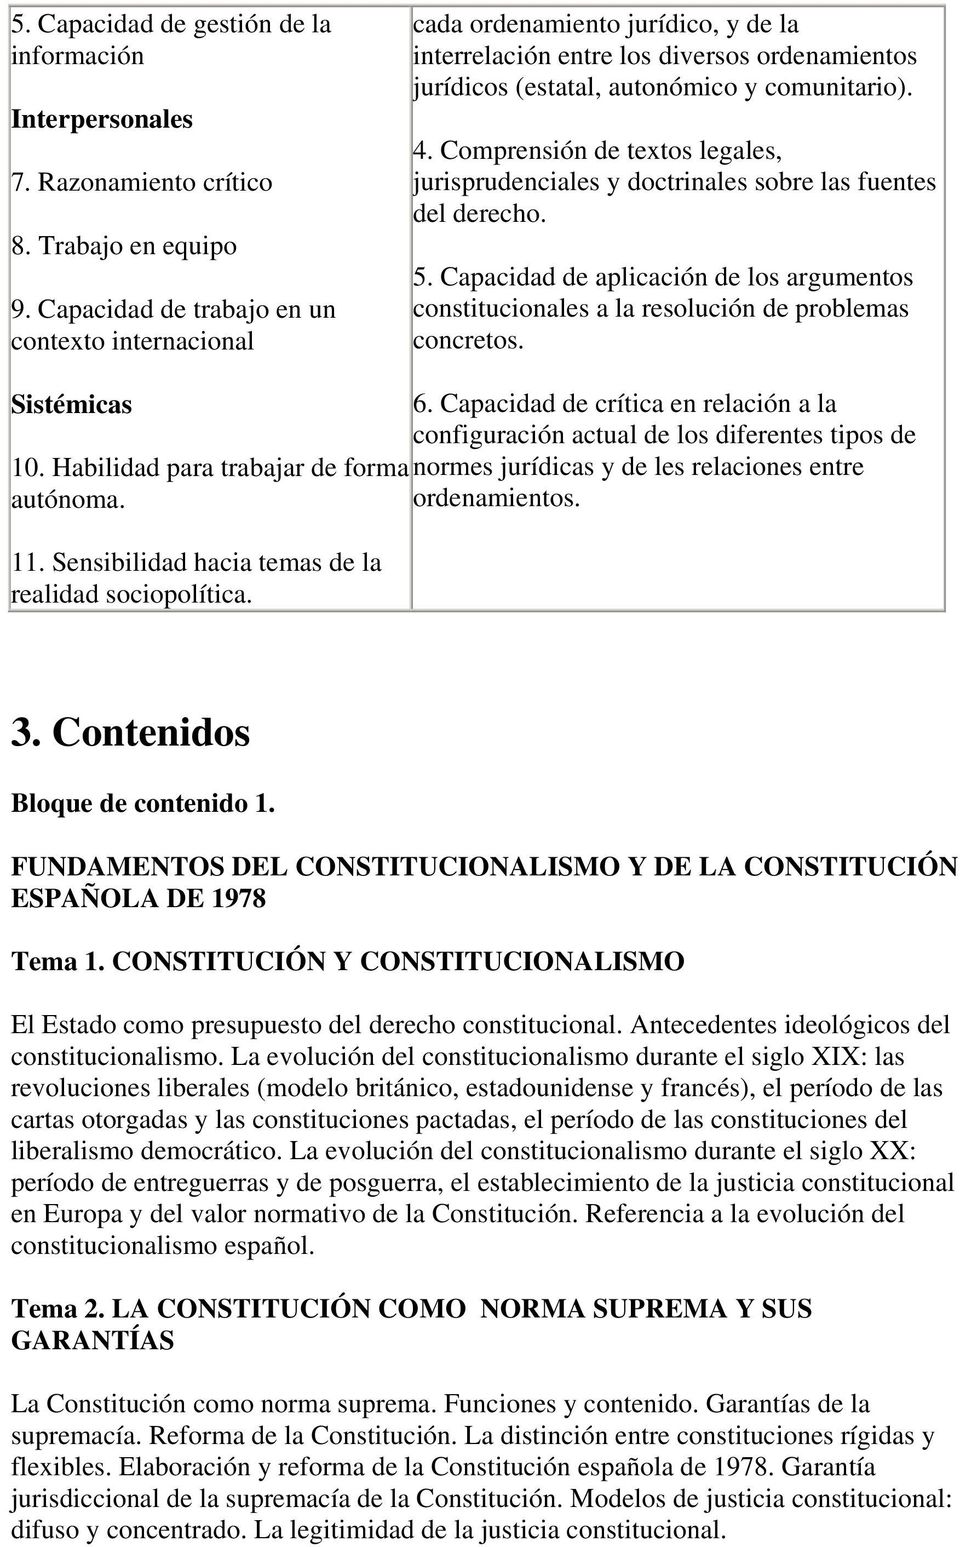 Comprensión de textos legales, jurisprudenciales y doctrinales sobre las fuentes del derecho. 5. Capacidad de aplicación de los argumentos constitucionales a la resolución de problemas concretos.